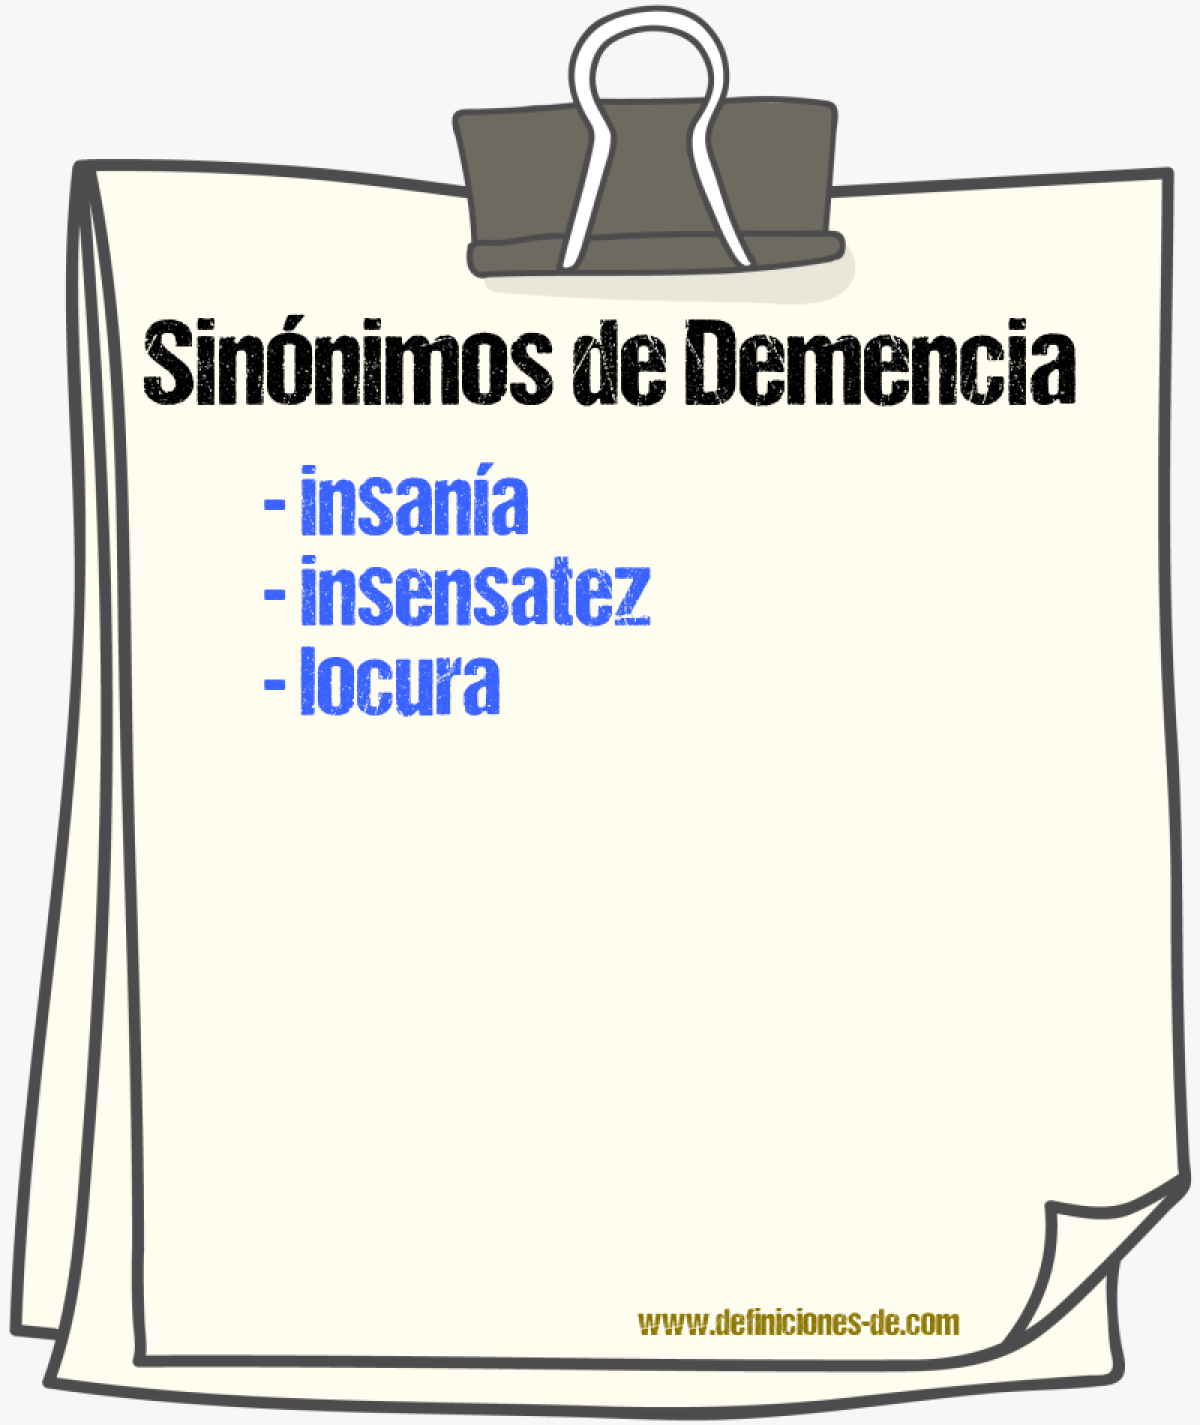 Sinónimos de demencia